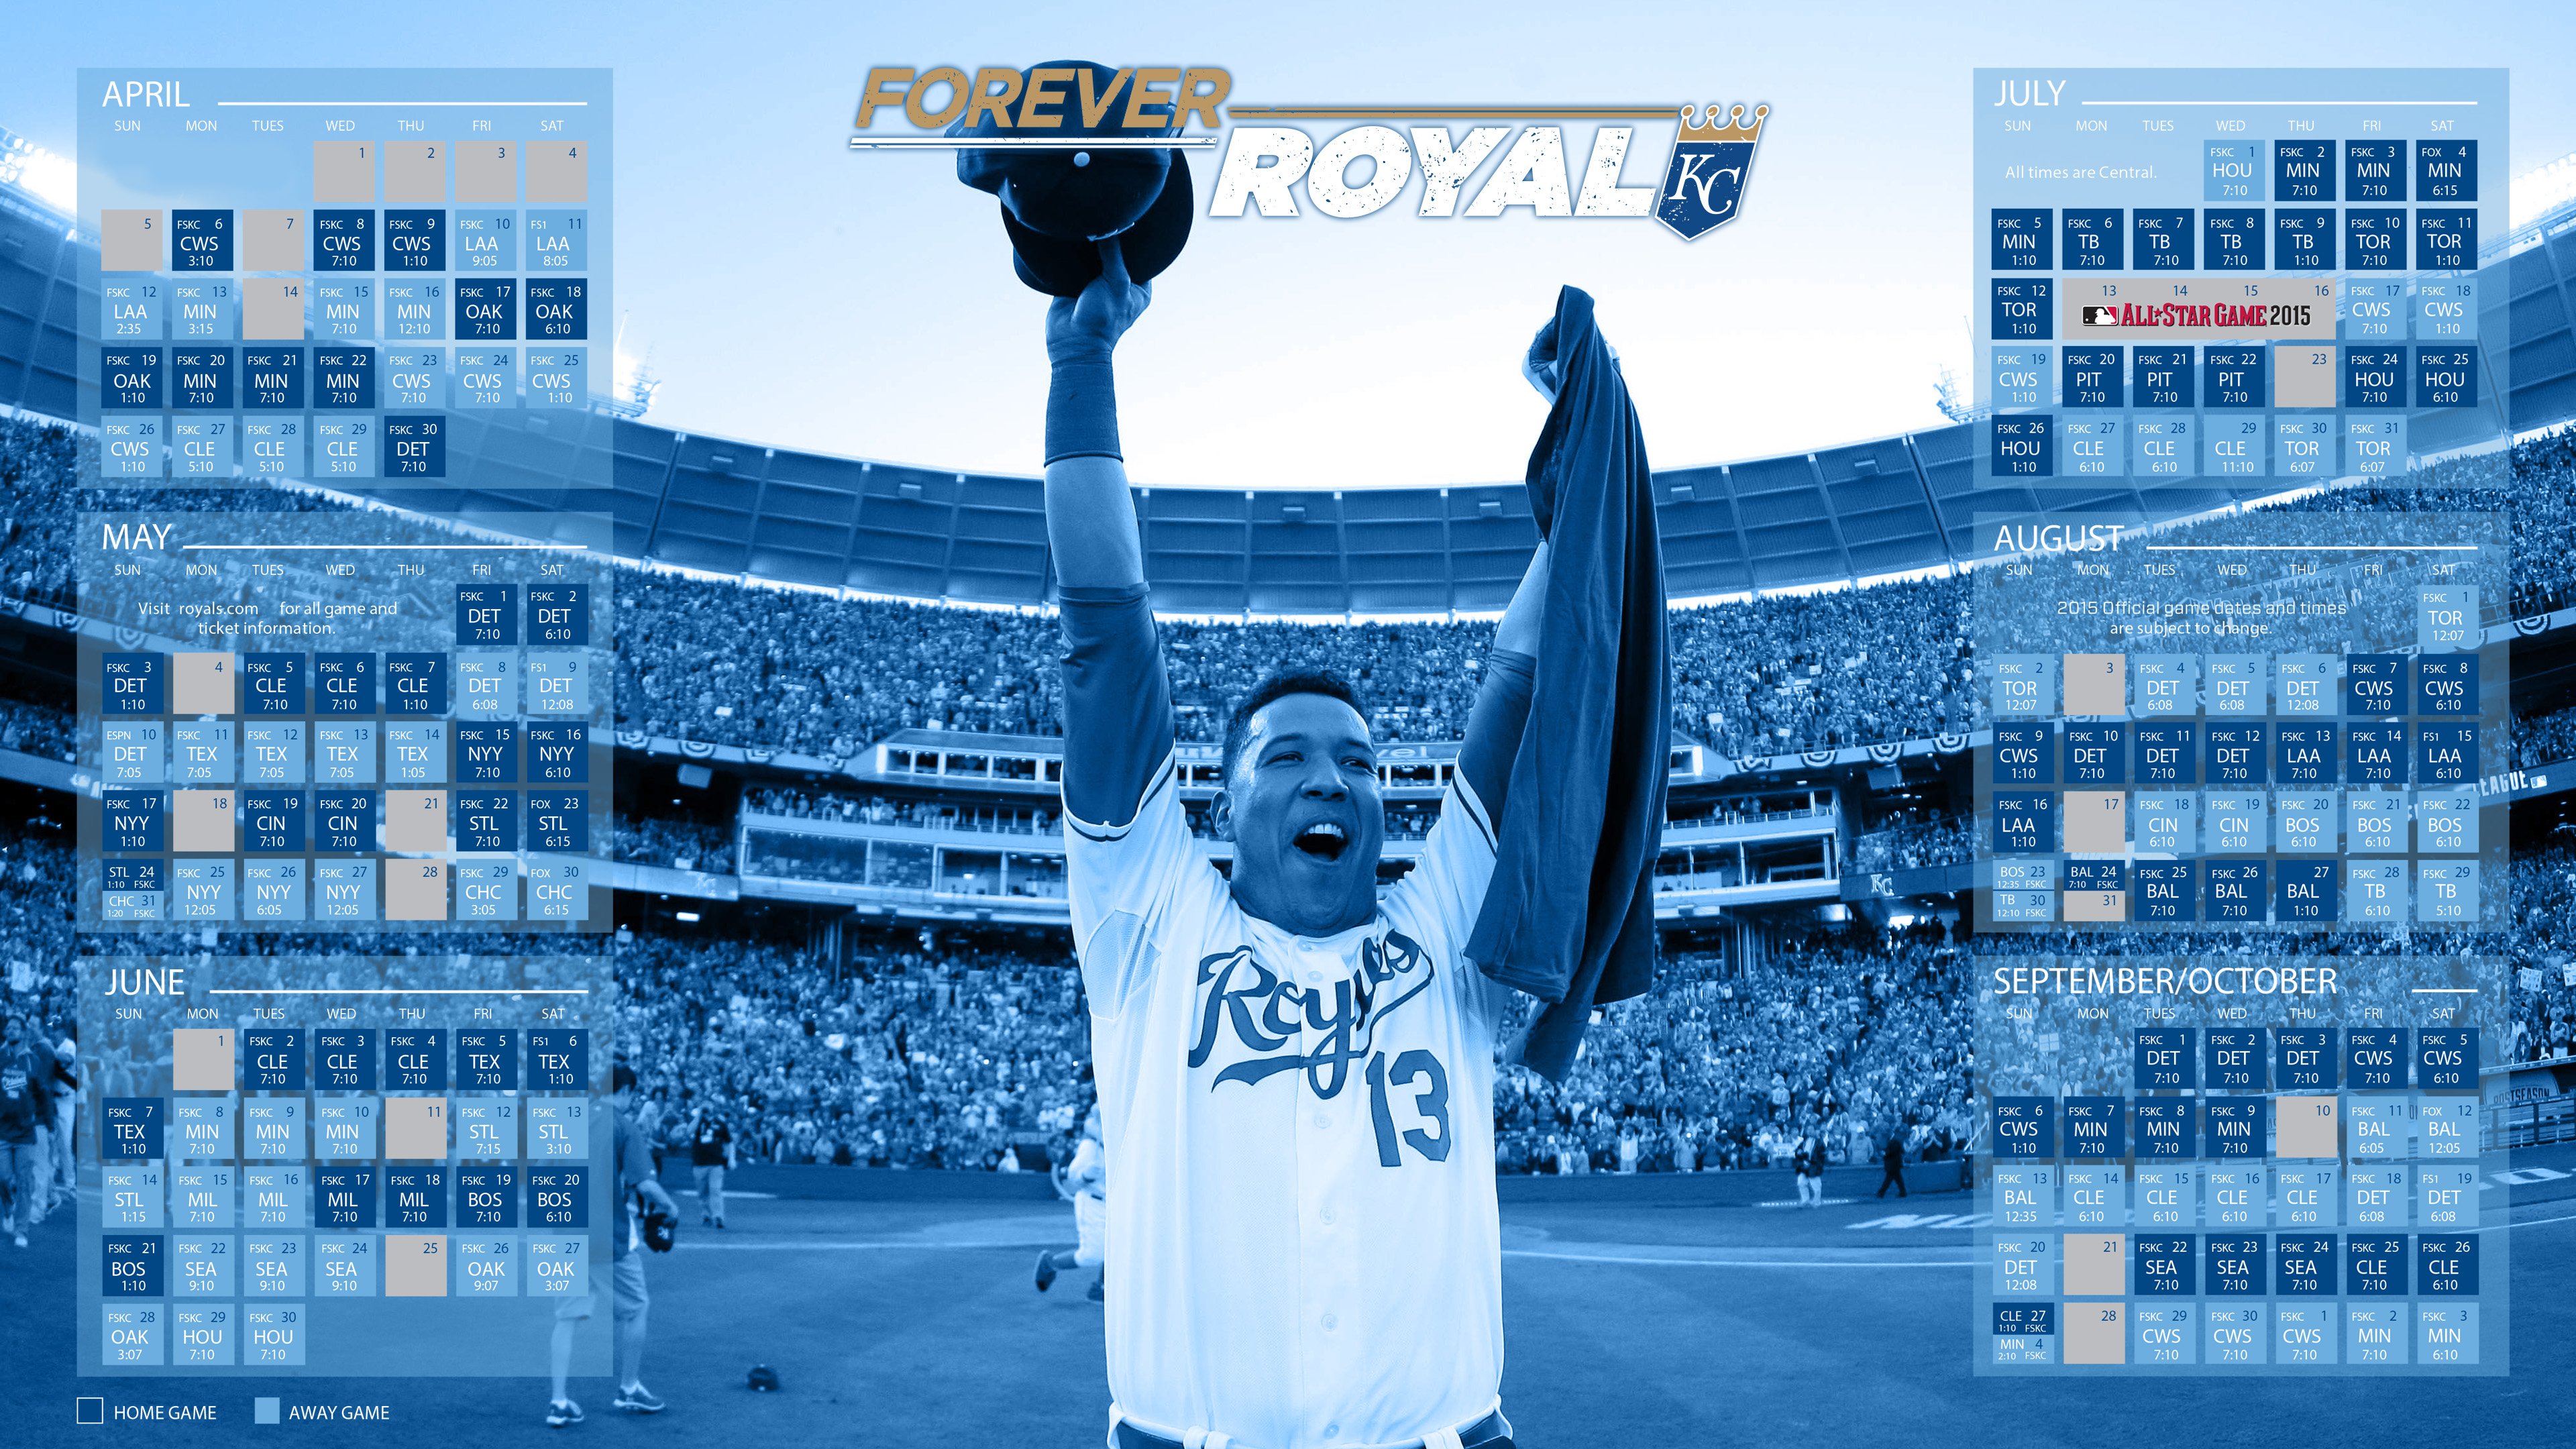 Kansas City Royals 2015 MLB Schedule Ultra HD Wallpaper